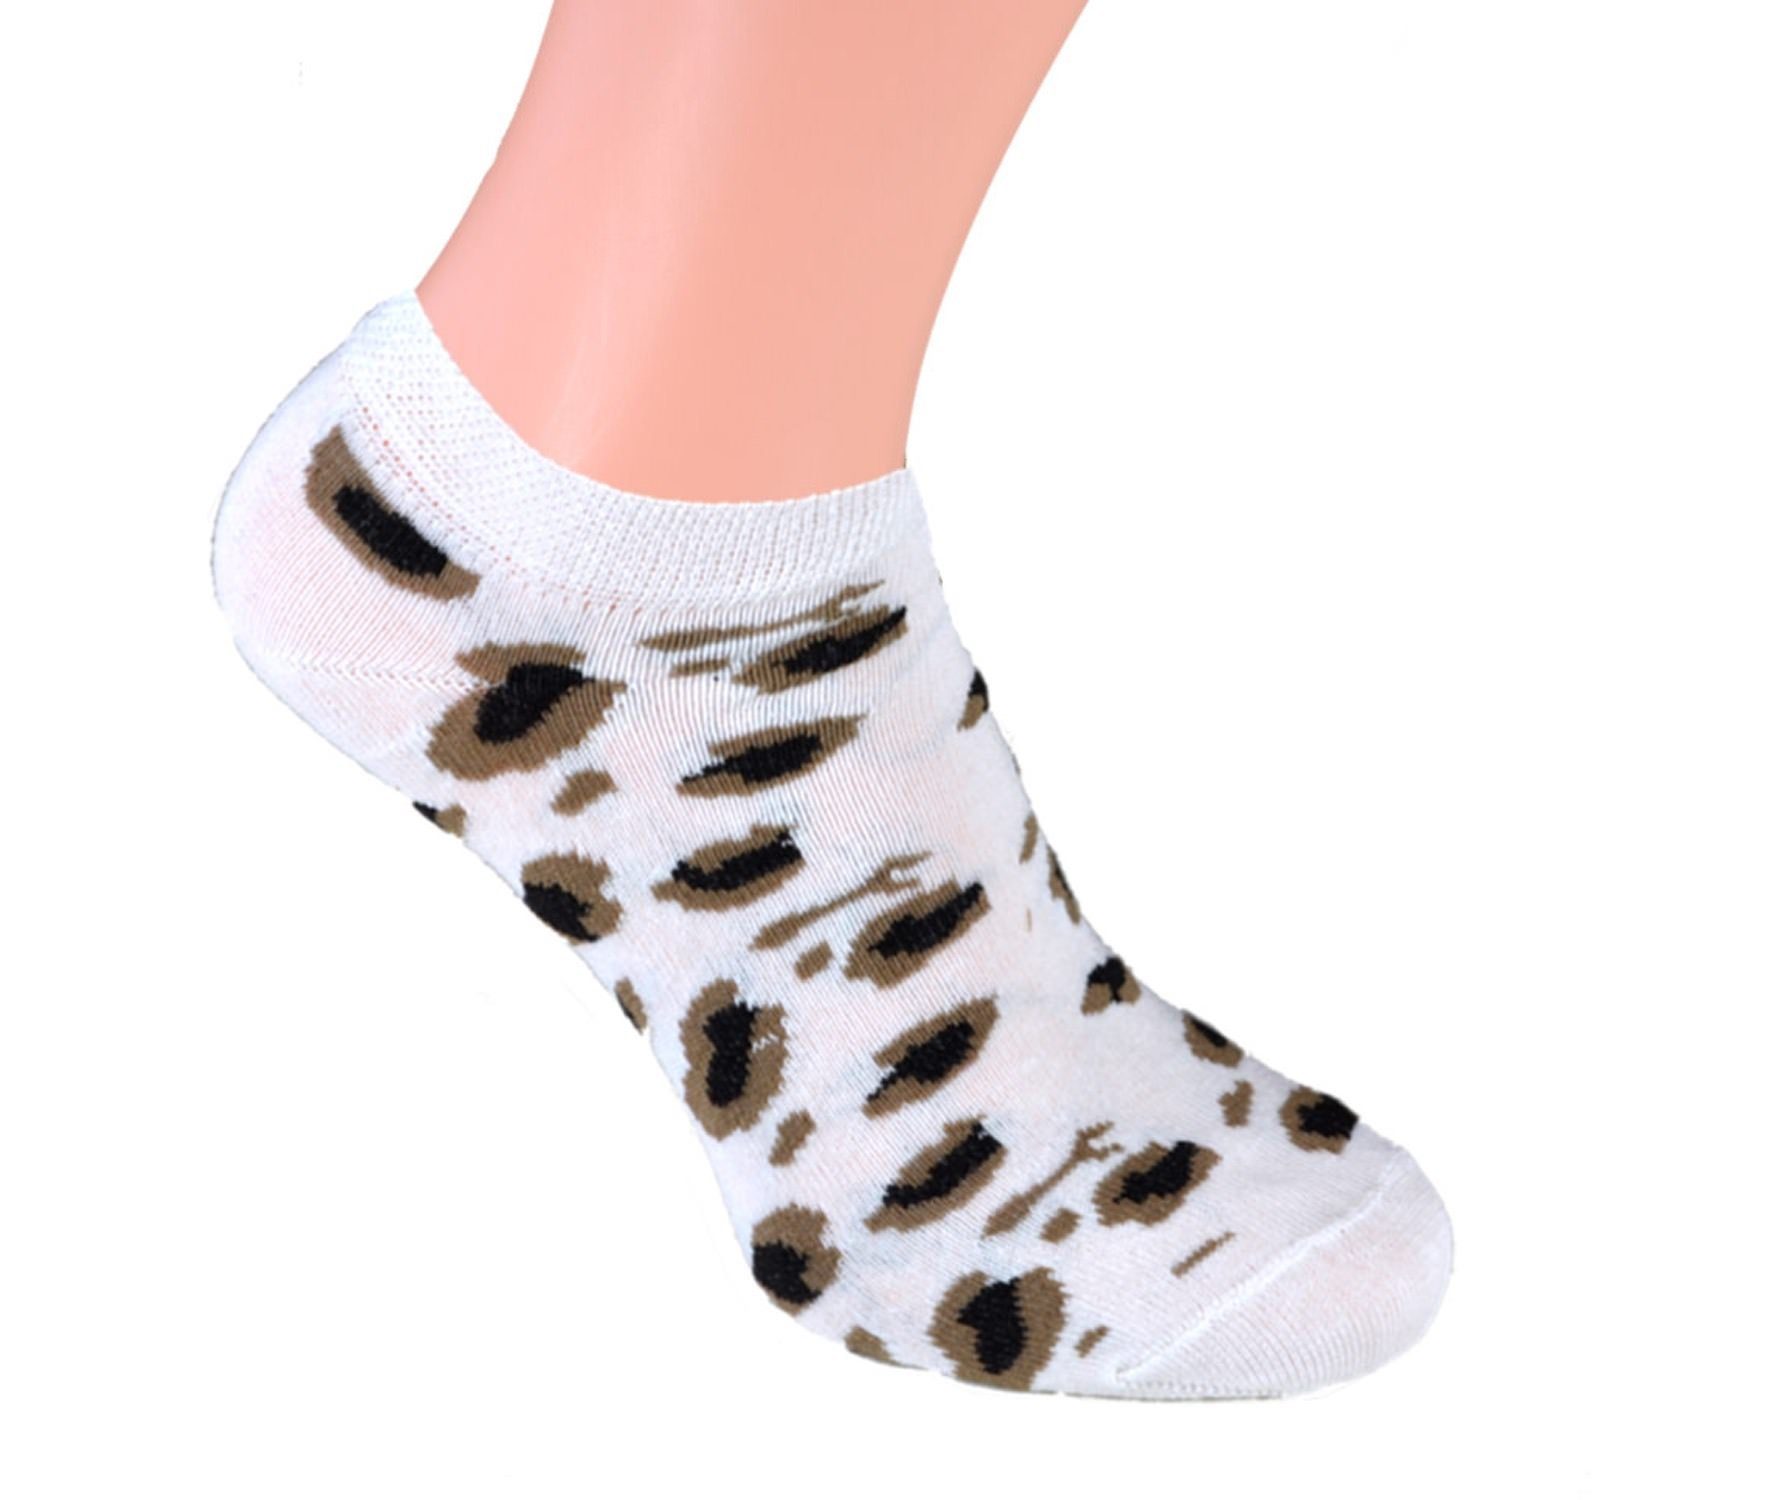 für 8 Damen Sneaker Socken Cocain Sneakersocken Modelle Marke verschiedene Paar Füsslinge underwear Söckchen Leopard (8-Paar) Baumwolle